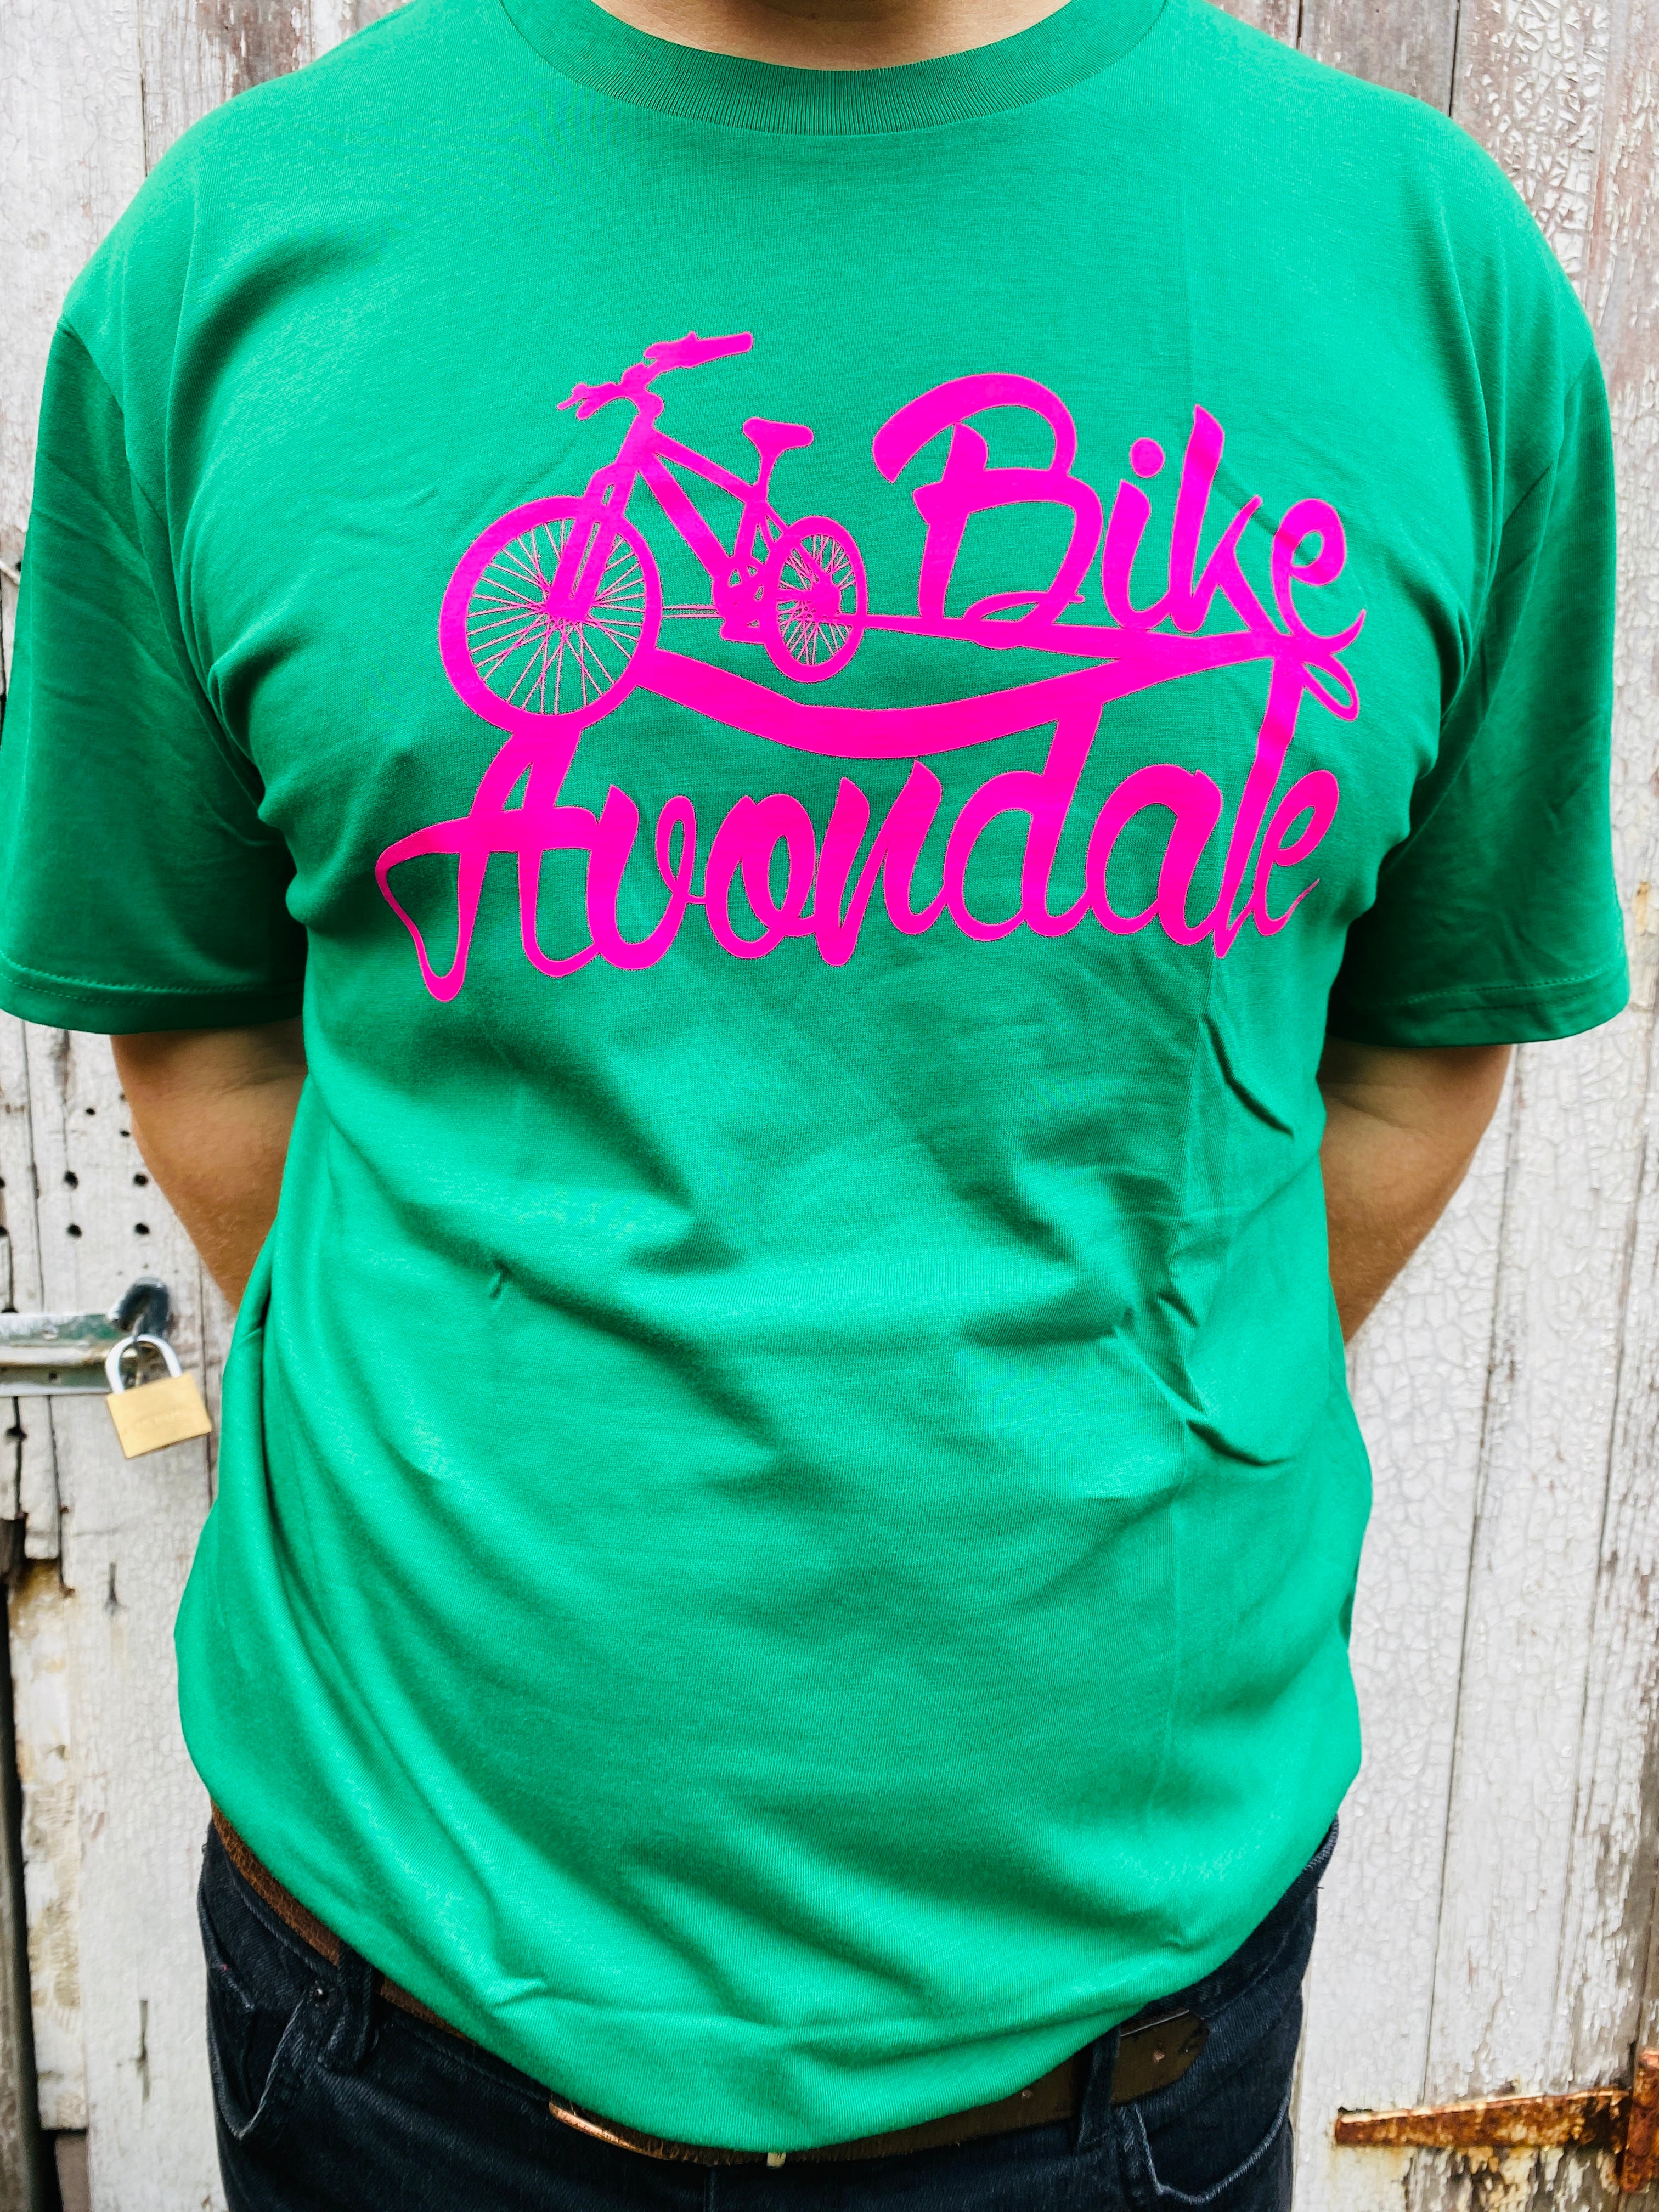 Bike Avondale Fundraiser T-Shirt